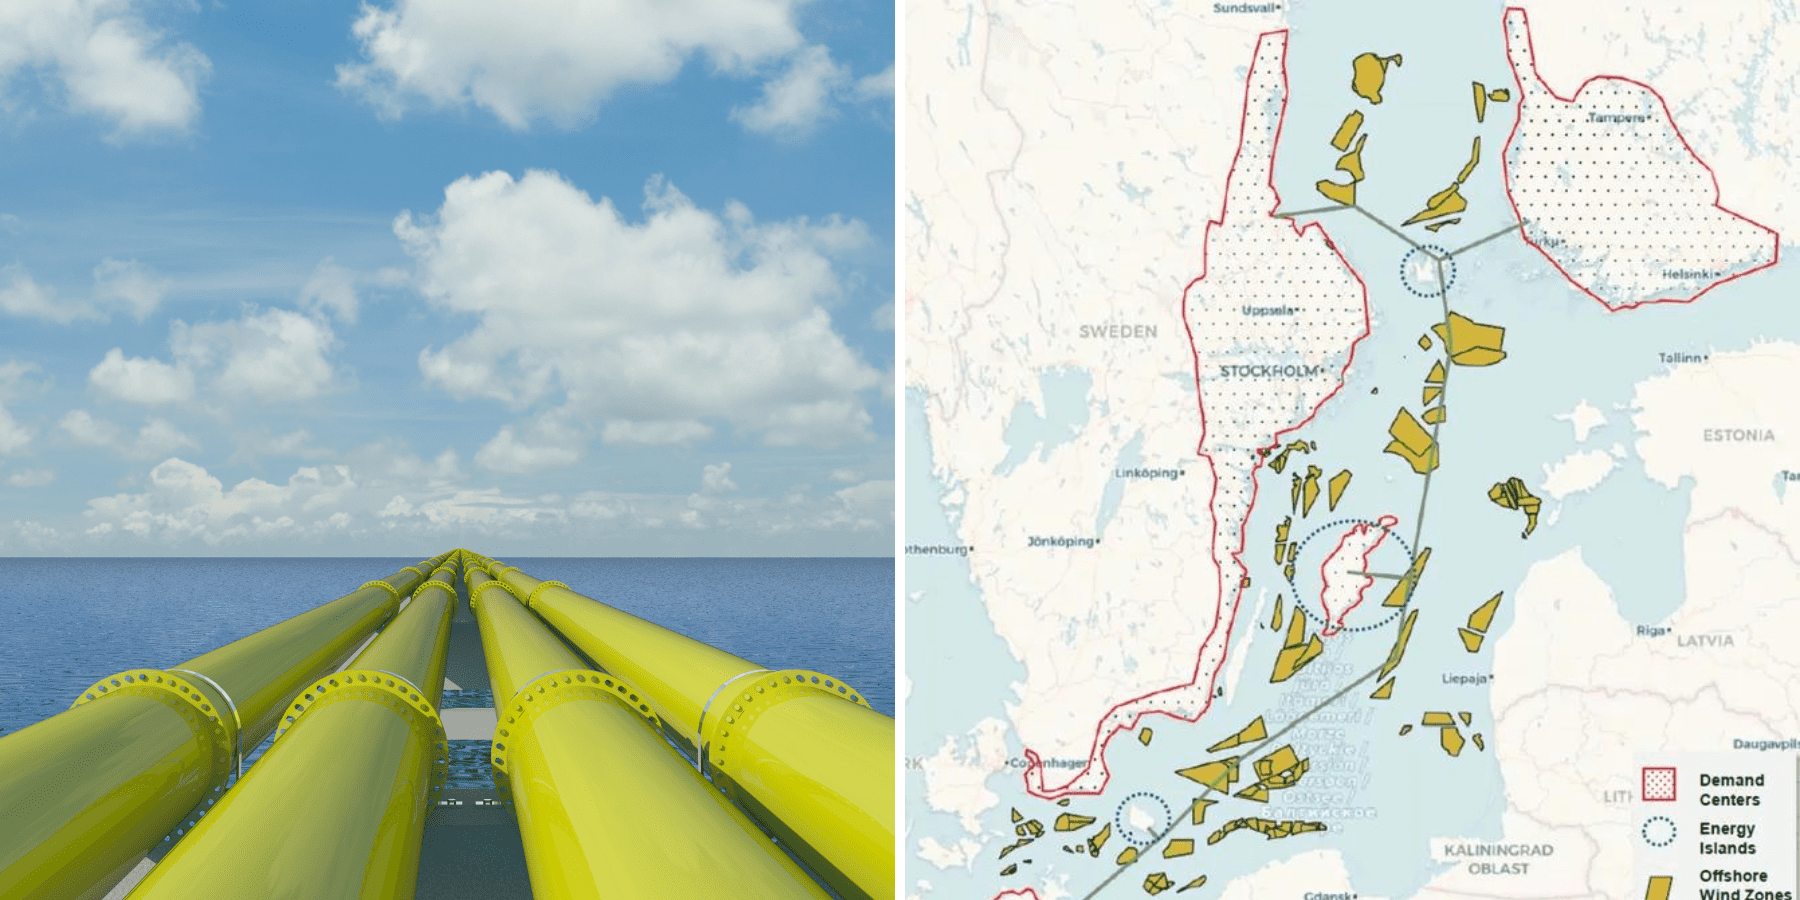 Gasoducto de hidrógeno en el fondo del Mar Báltico.  Comienza la investigación